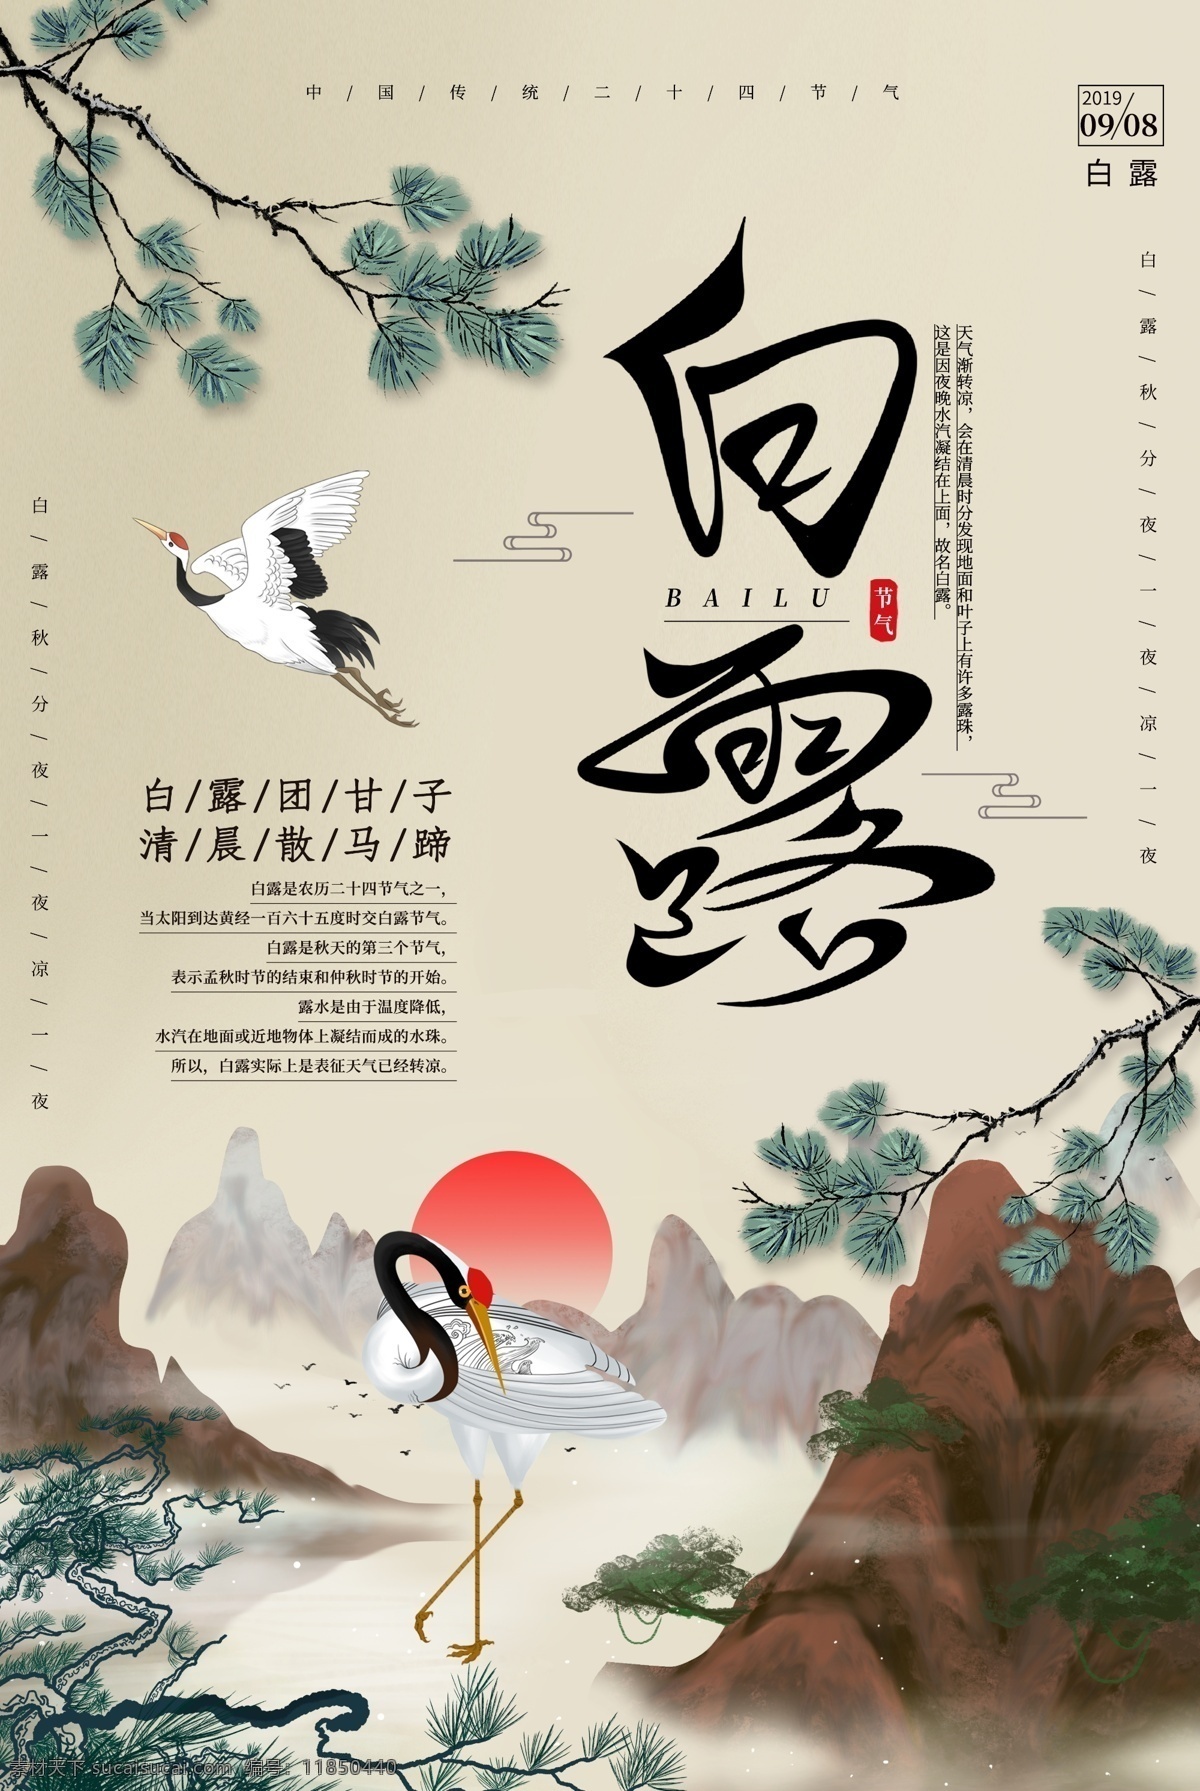 白露 传统节日 活动 宣传海报 传统 节日 宣传 海报